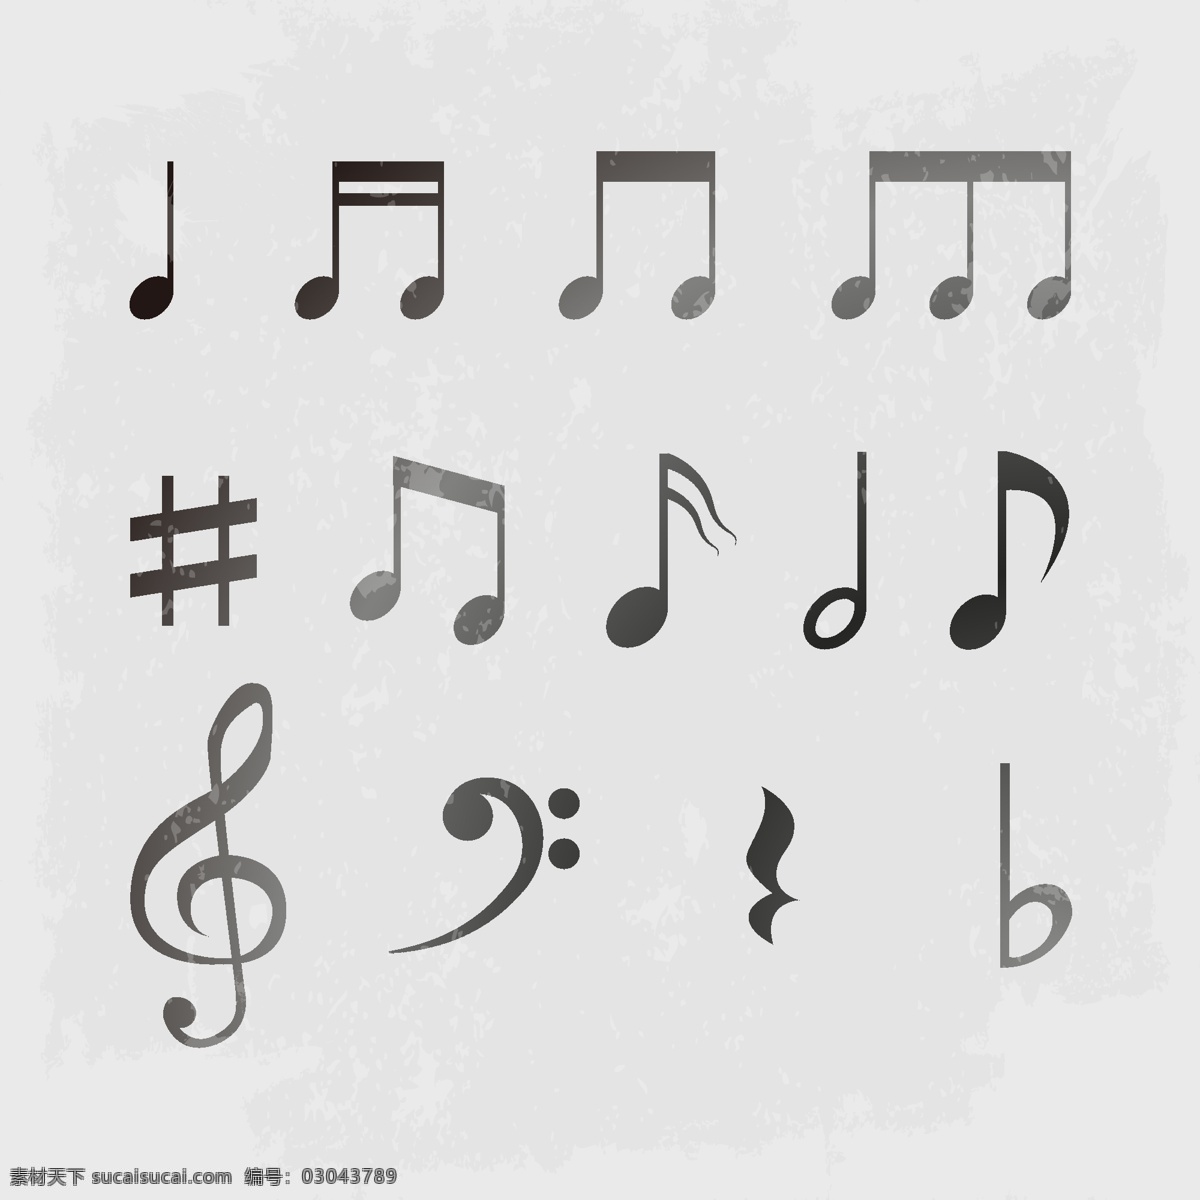 灵动音符 音符 各种音符 音符设计 音乐符号 音标 音标素材 艺术音符标志 音乐 创意素材 标志图标 其他图标 矢量素材